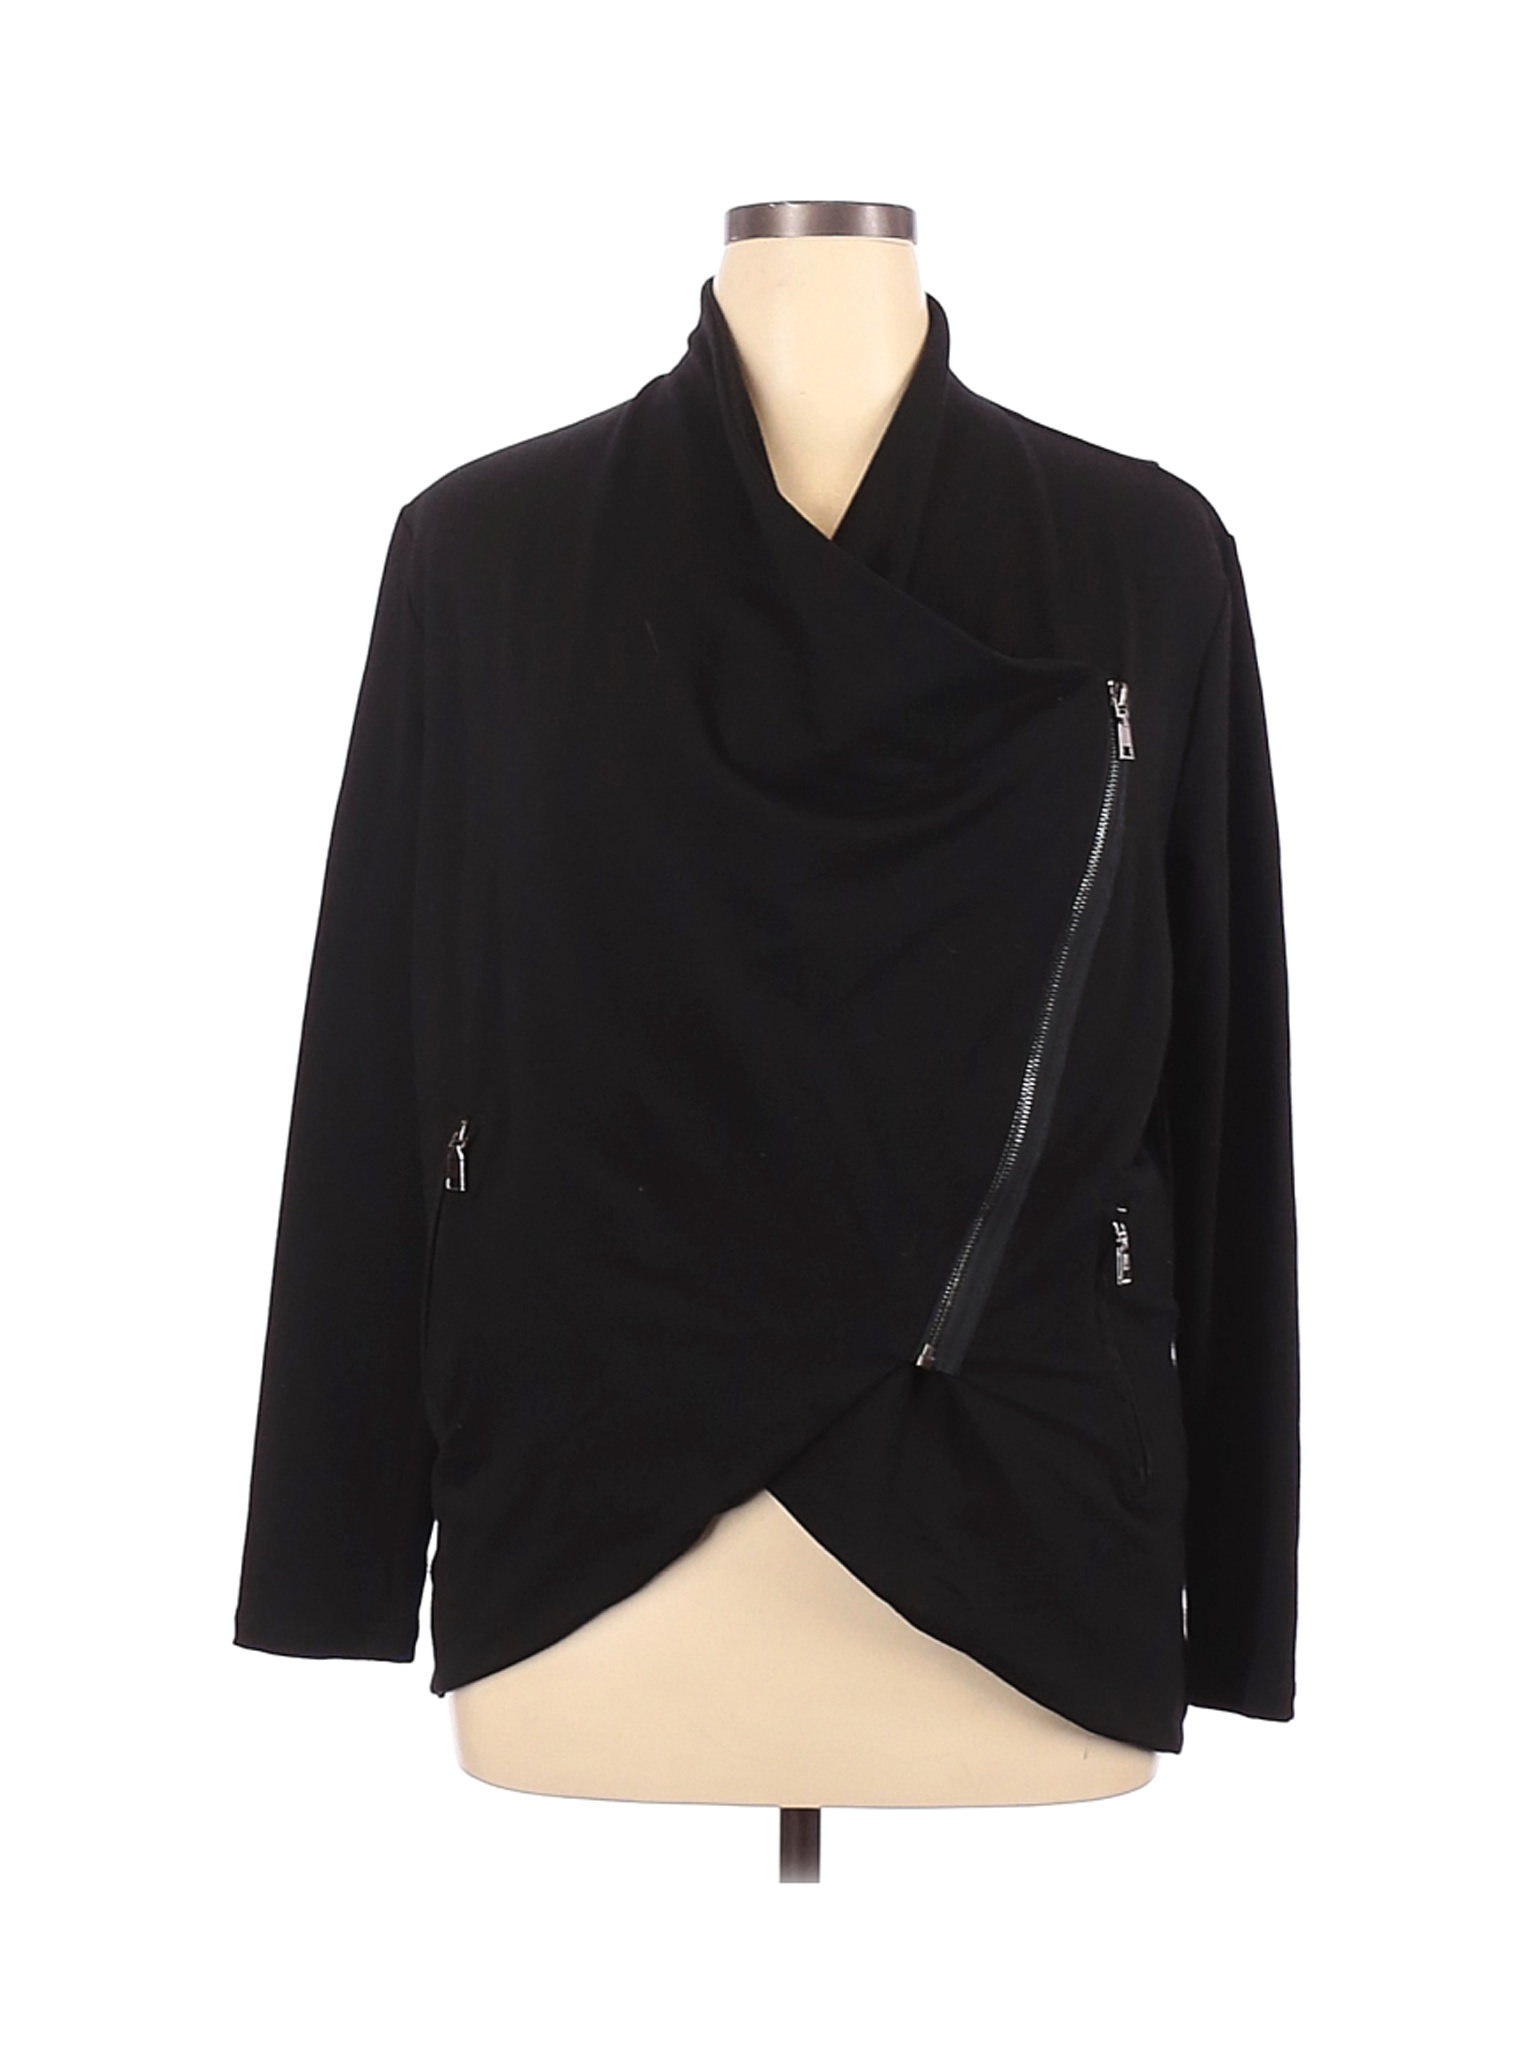 Sportelle Women Black Jacket XL | eBay